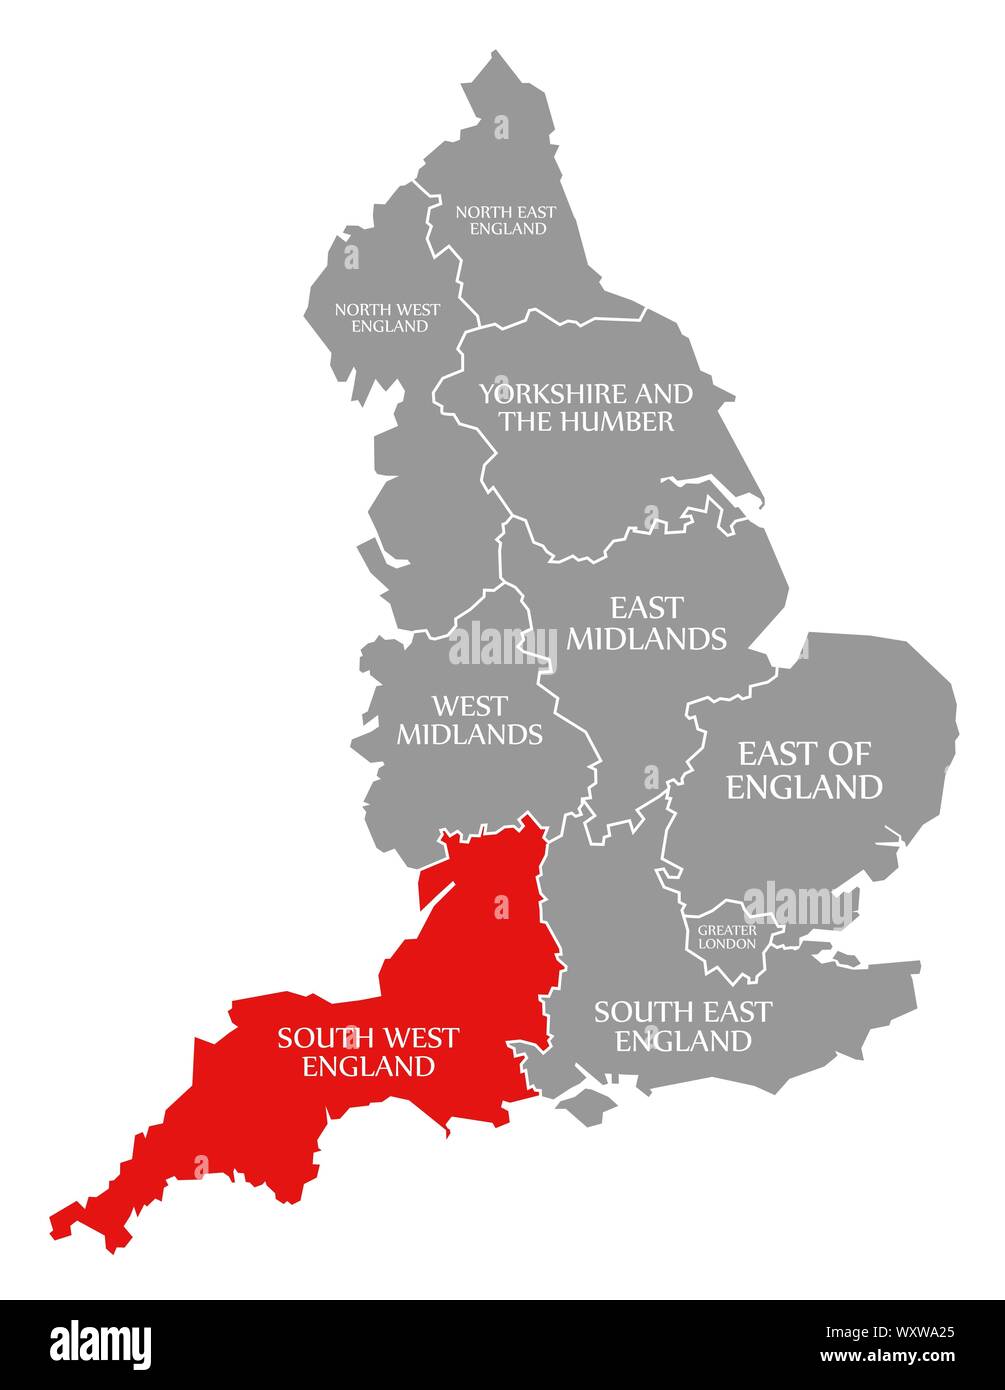 Le sud-ouest de l'Angleterre en surbrillance rouge dans la carte de l'Angleterre, Royaume-Uni Banque D'Images